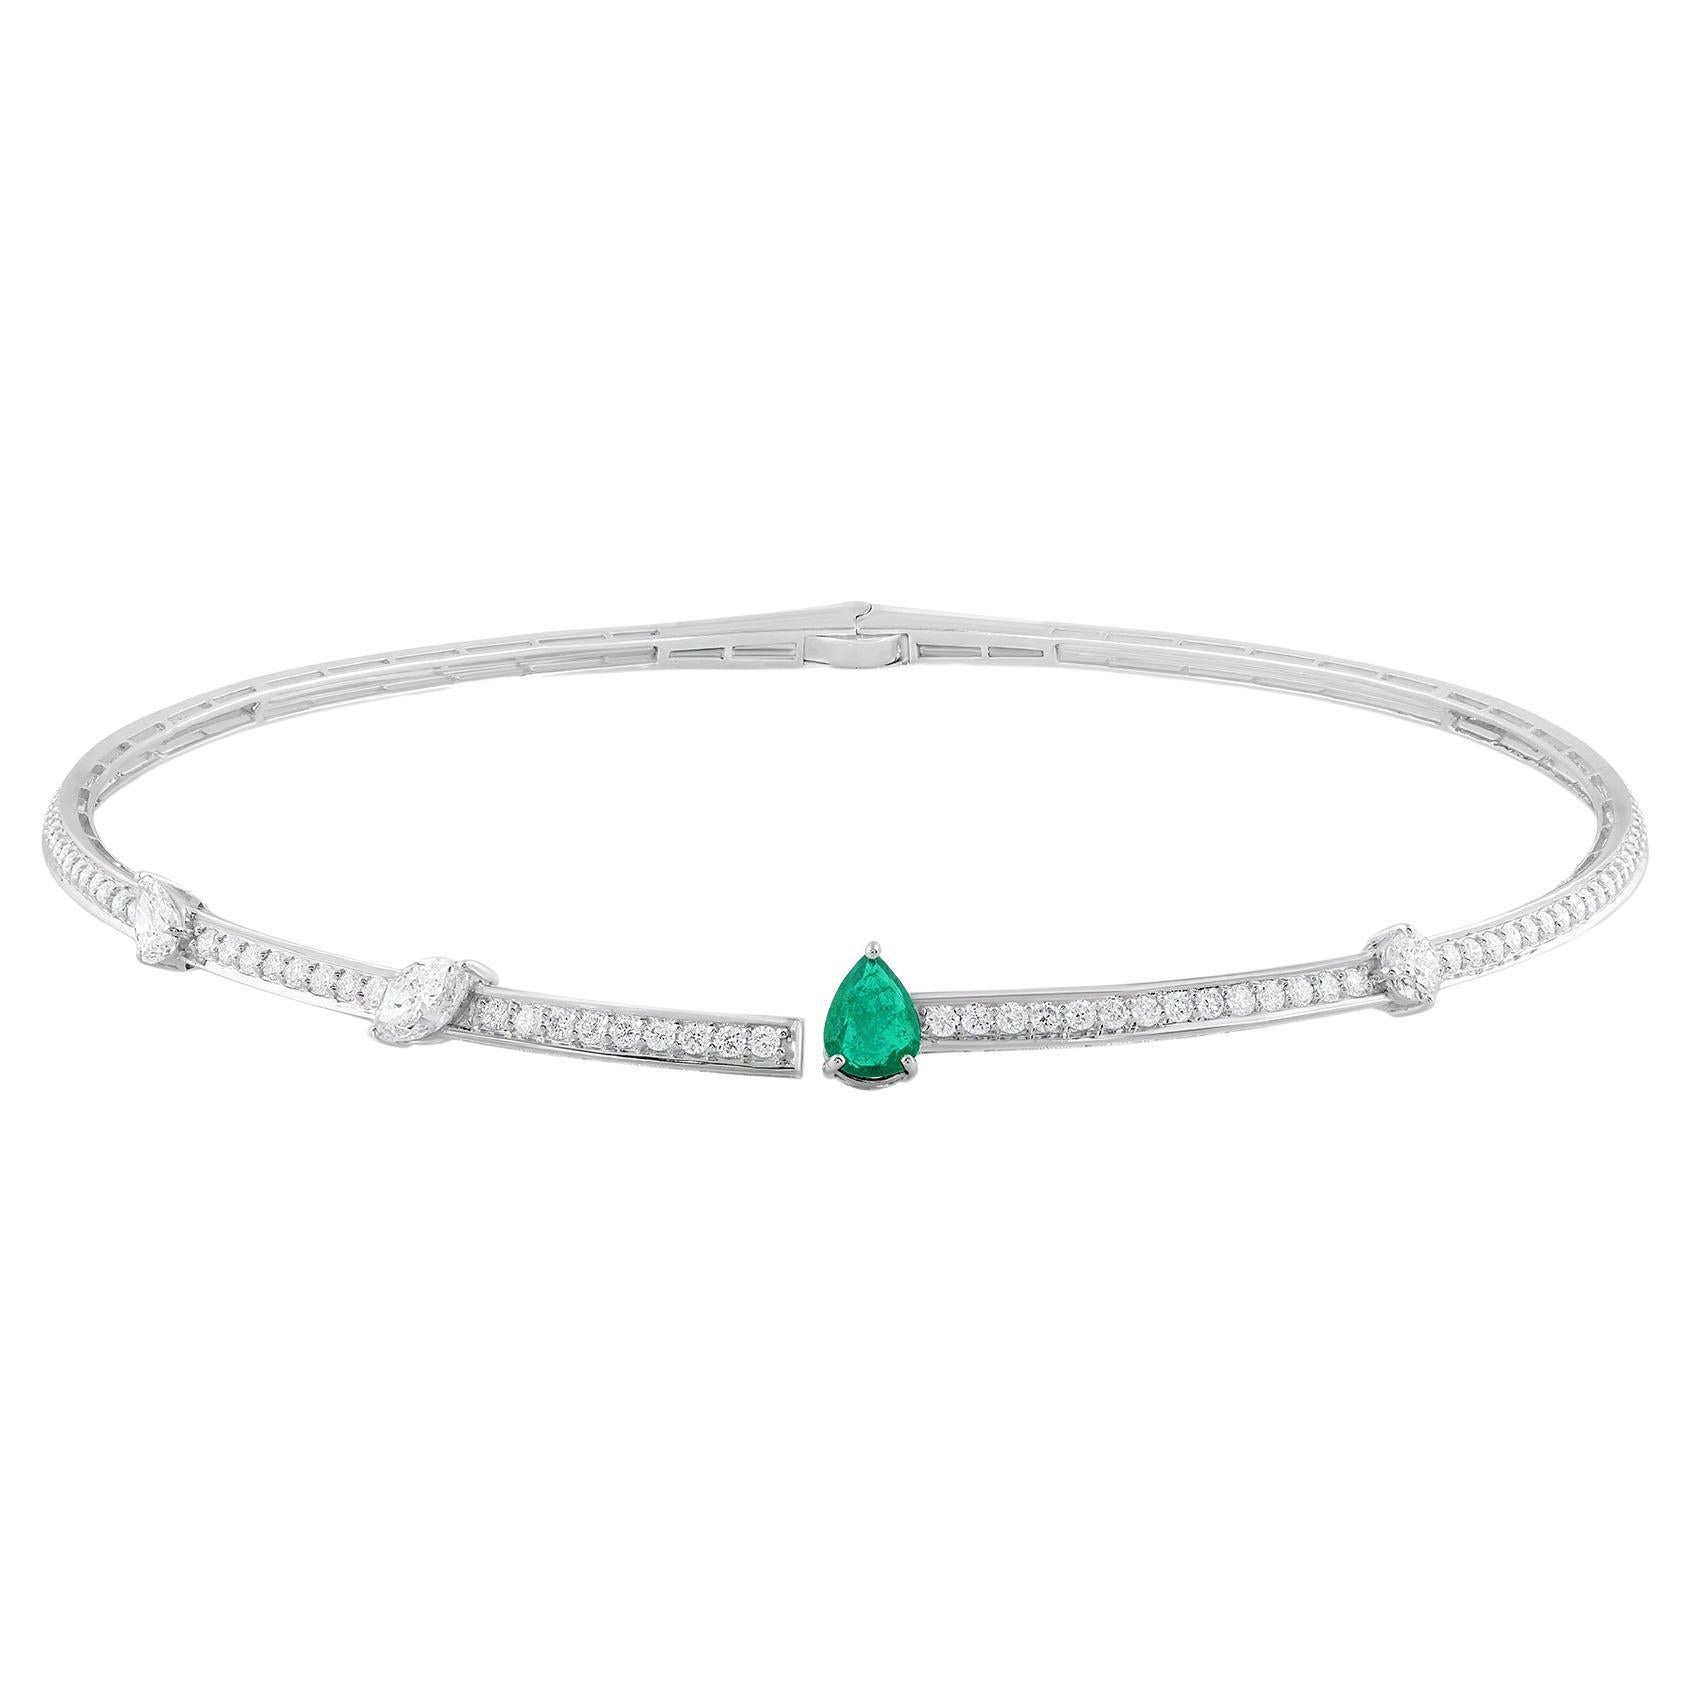 Pear Zambian Emerald Choker Necklace Diamond 18 Karat White Gold Fine Jewelry